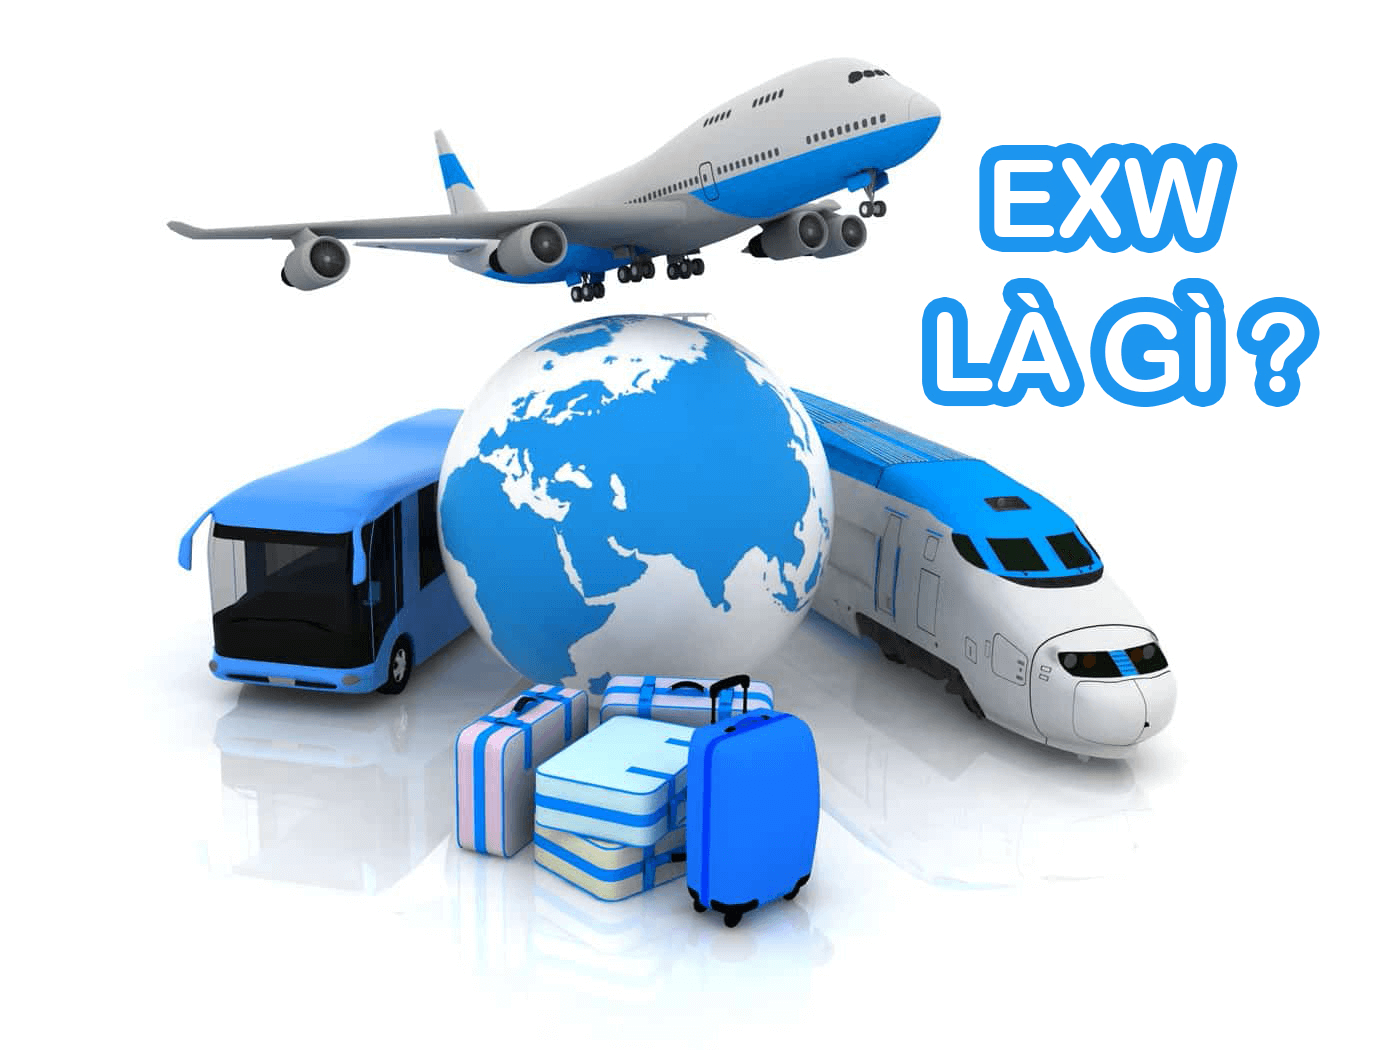 Ex work là gì trong xuất nhập khẩu hàng hóa?